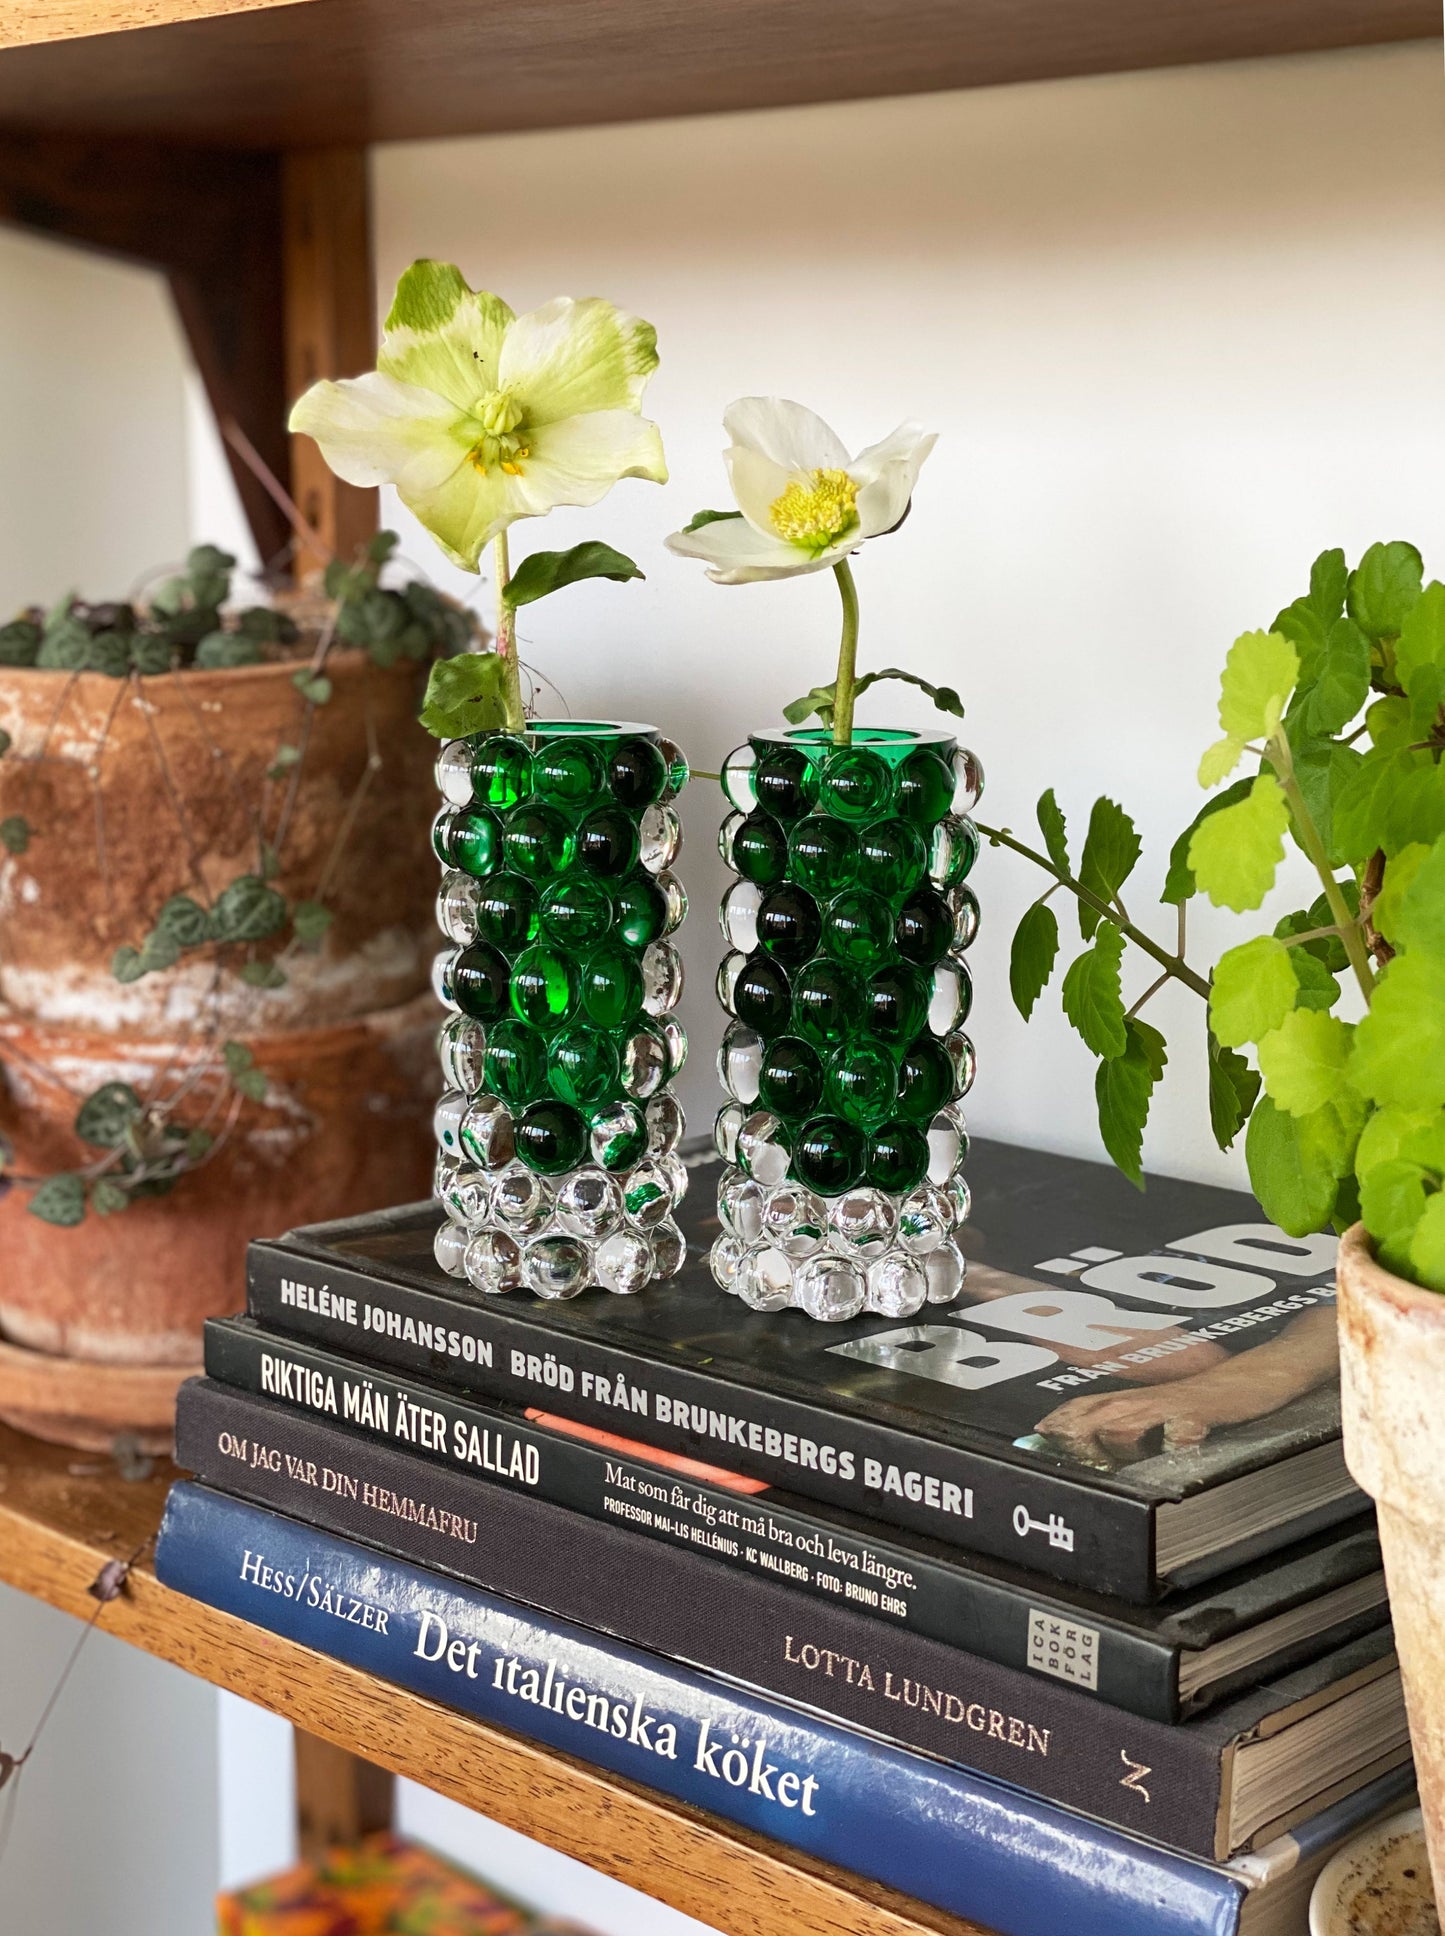 HURRICANE BOULE MINI, Green Mini Vase